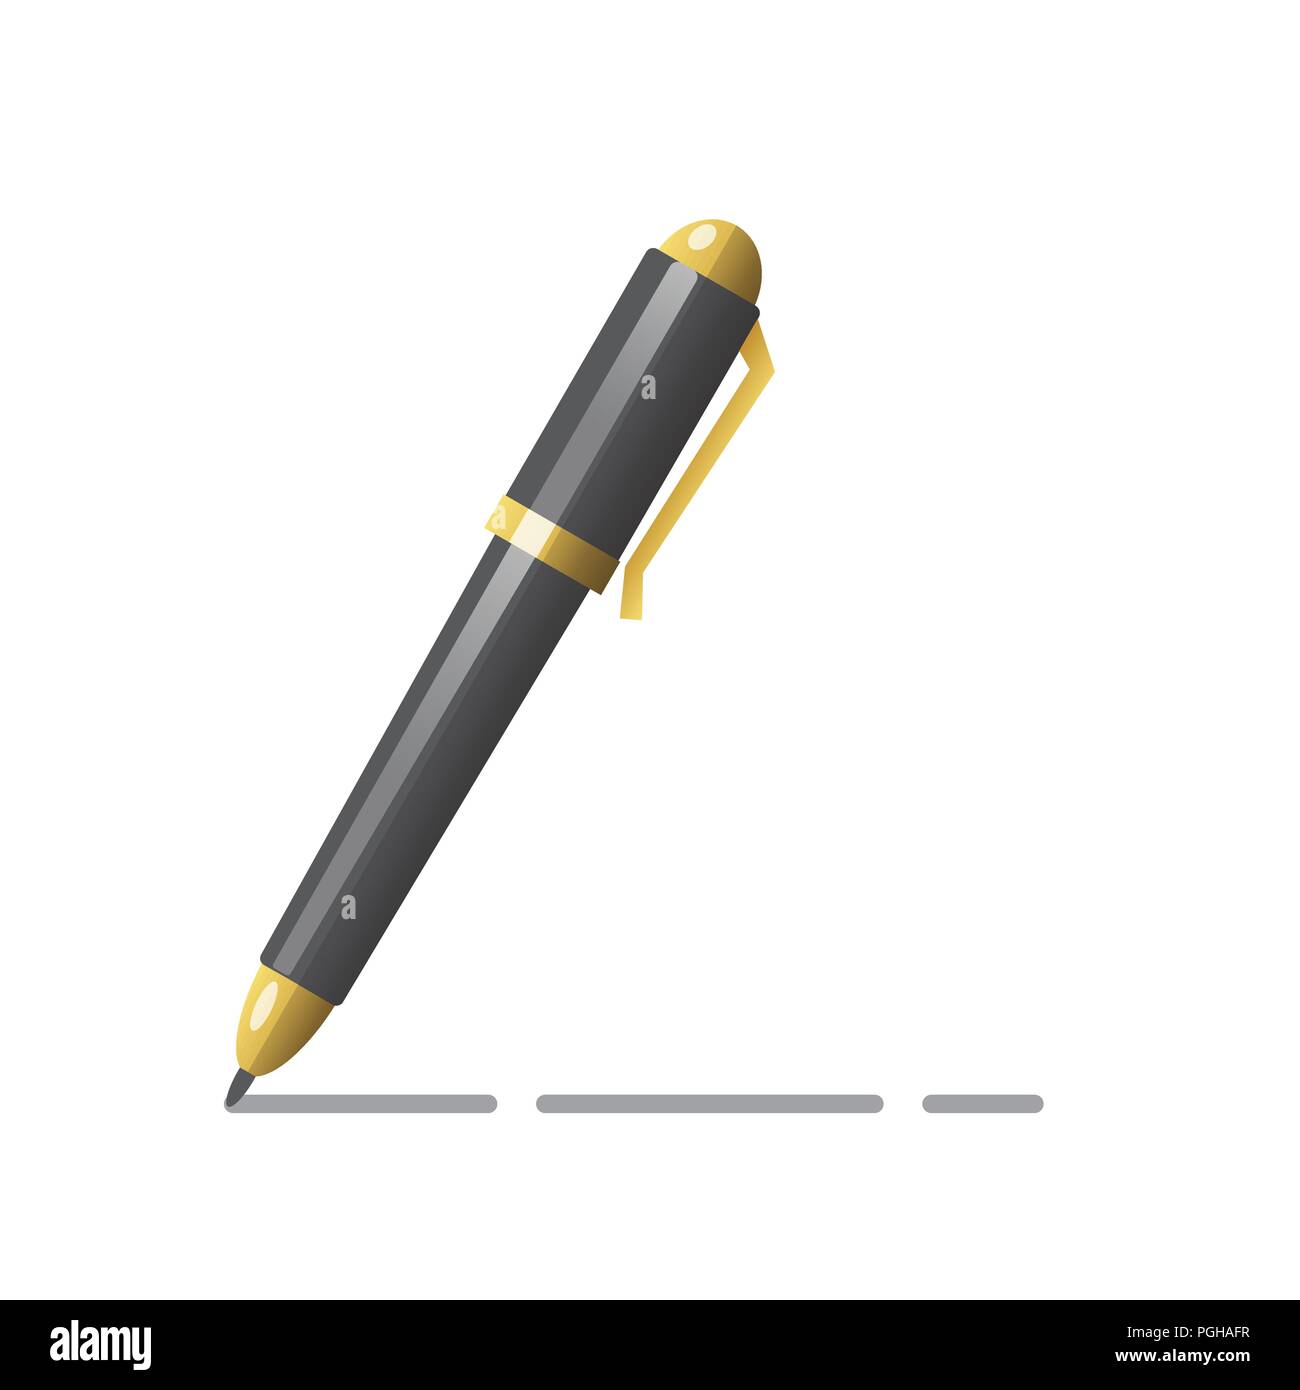 Writing ball pen icon, school tool. Pen icon. Stock Vector